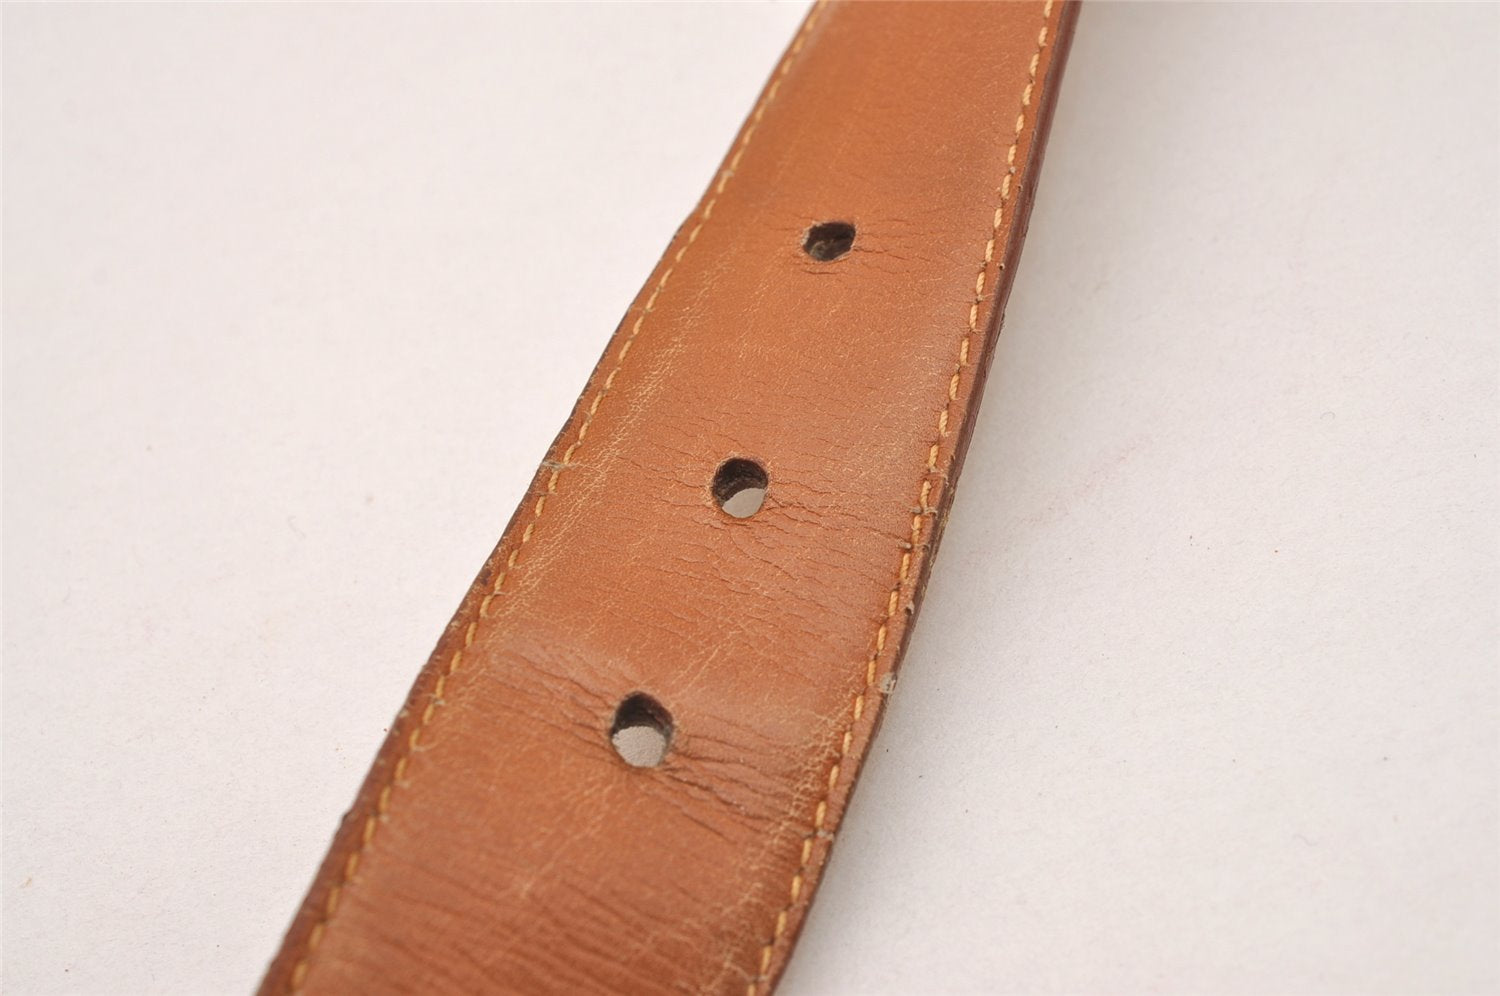 Authentic GUCCI Vintage Belt GG Canvas Leather Size 80cm 31.5